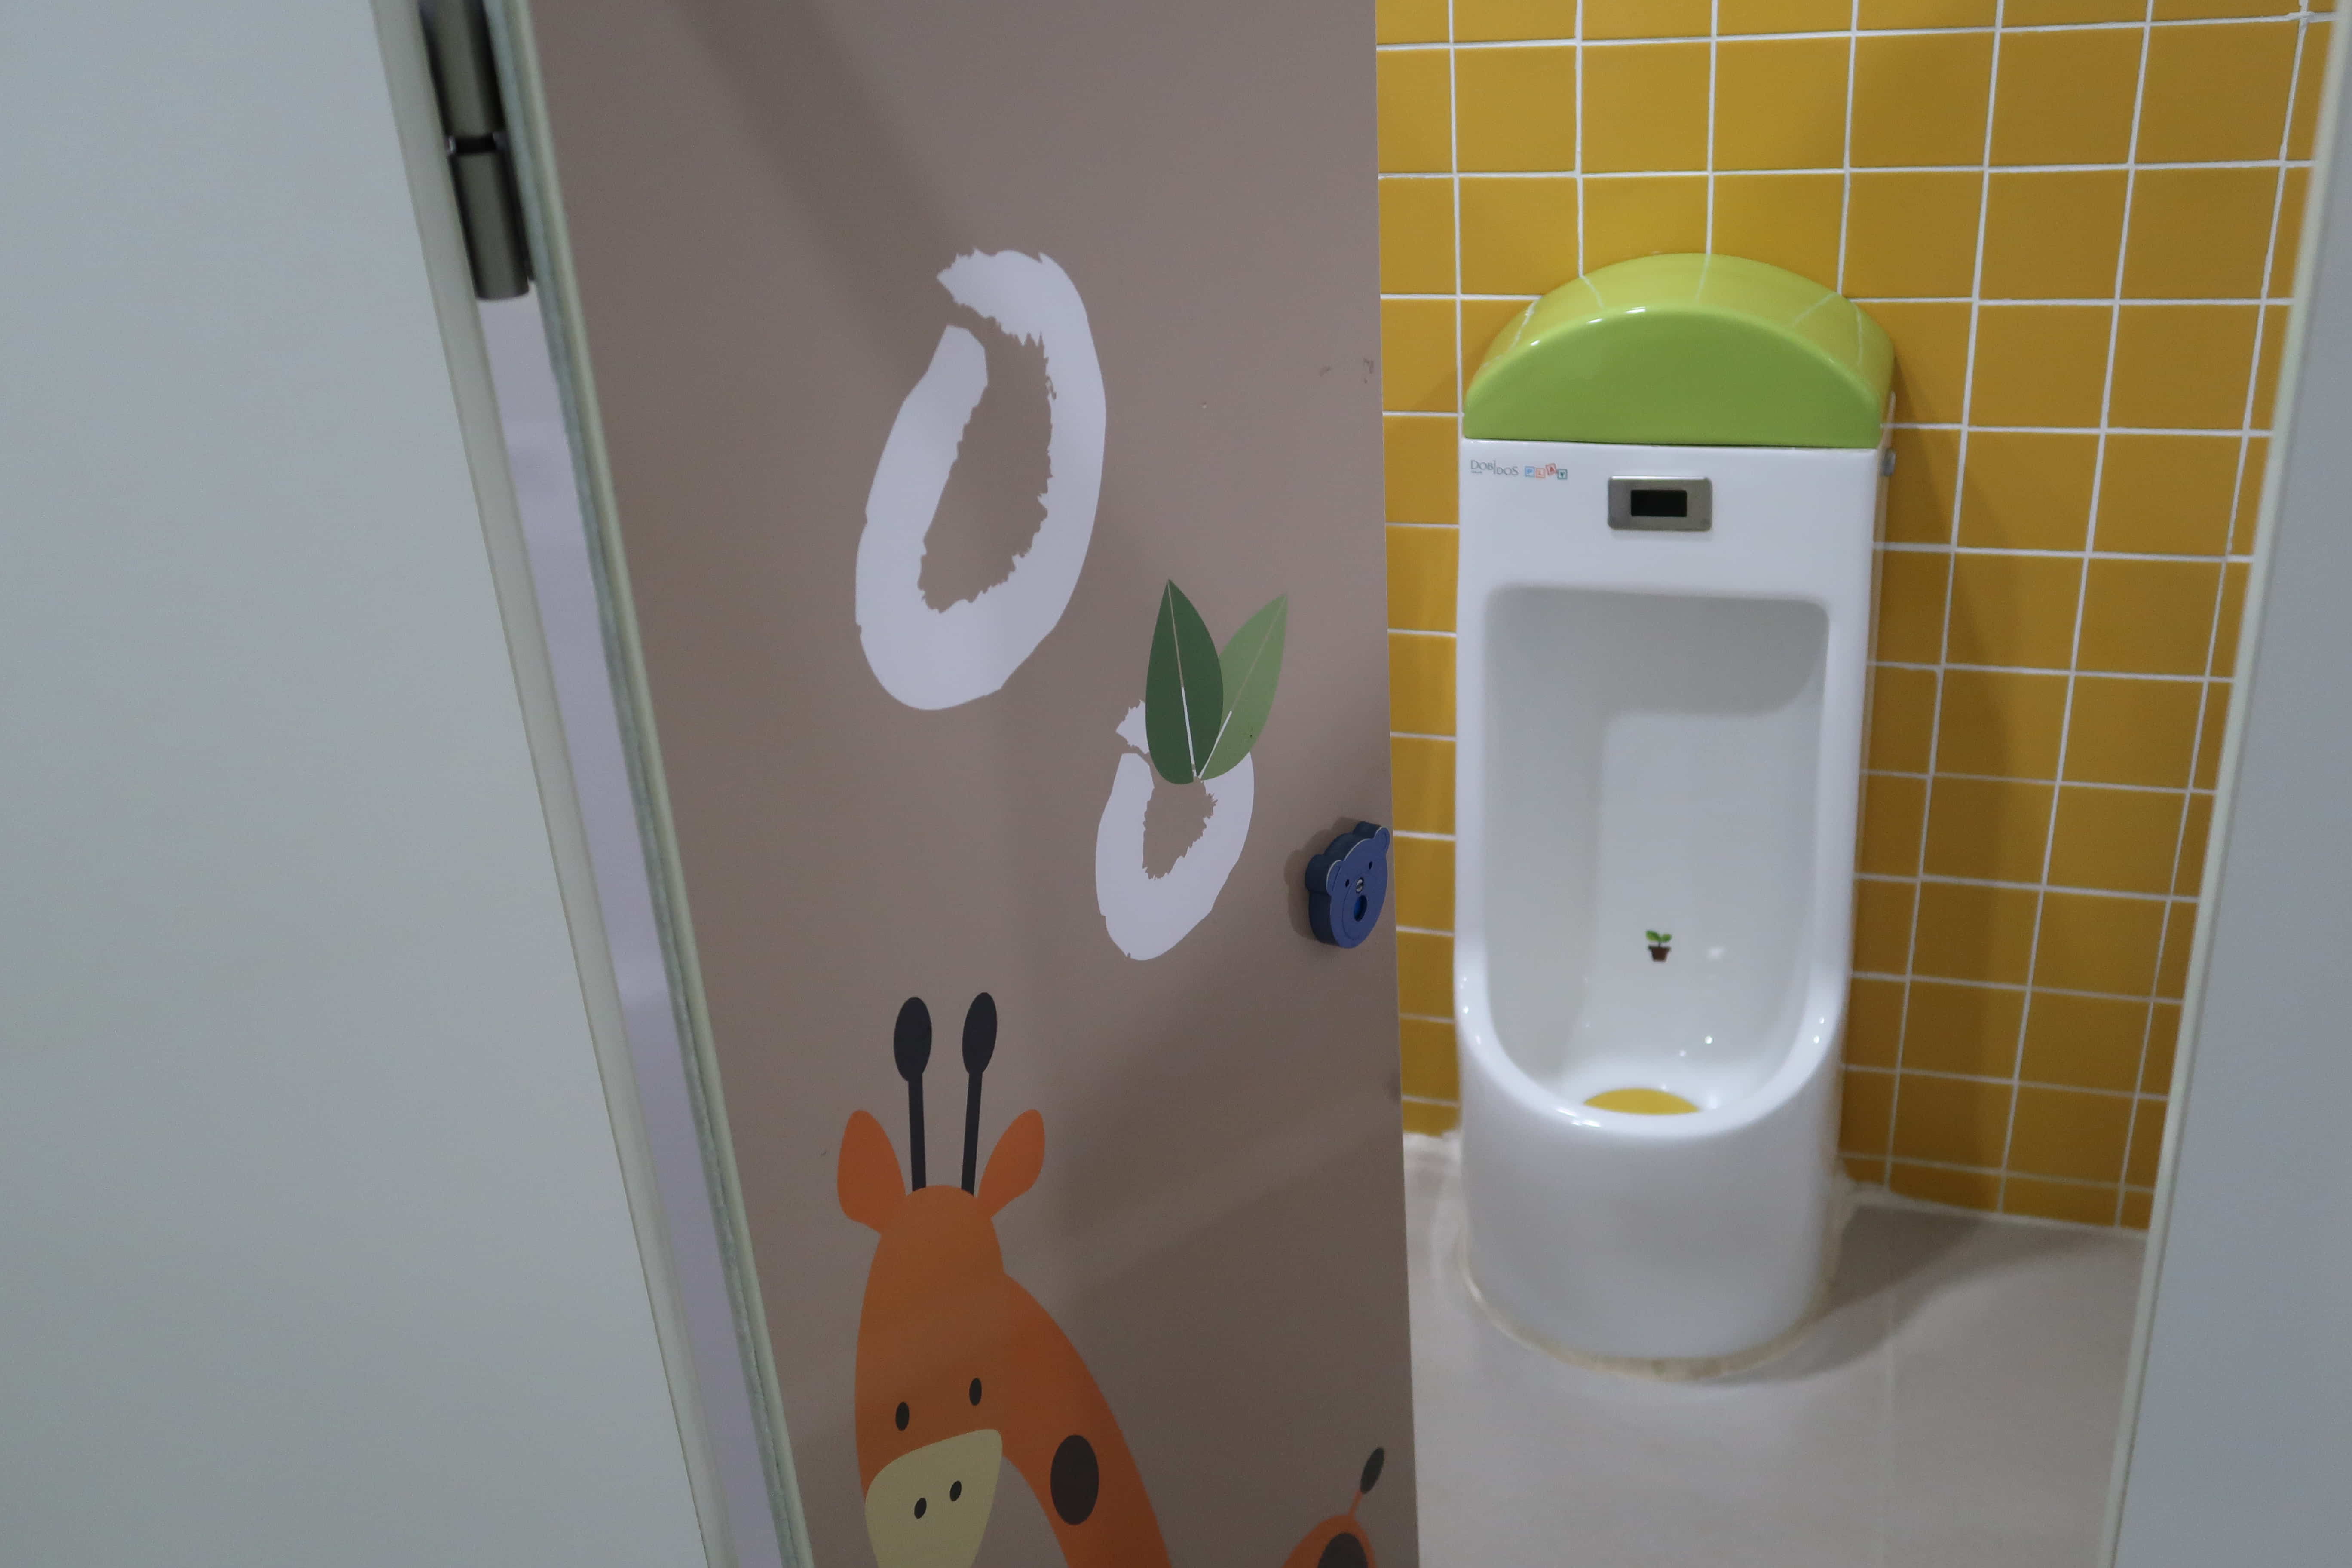 유아 화장실0 : 마포중앙도서관 유아화장실에 설치된 유아용 소변기